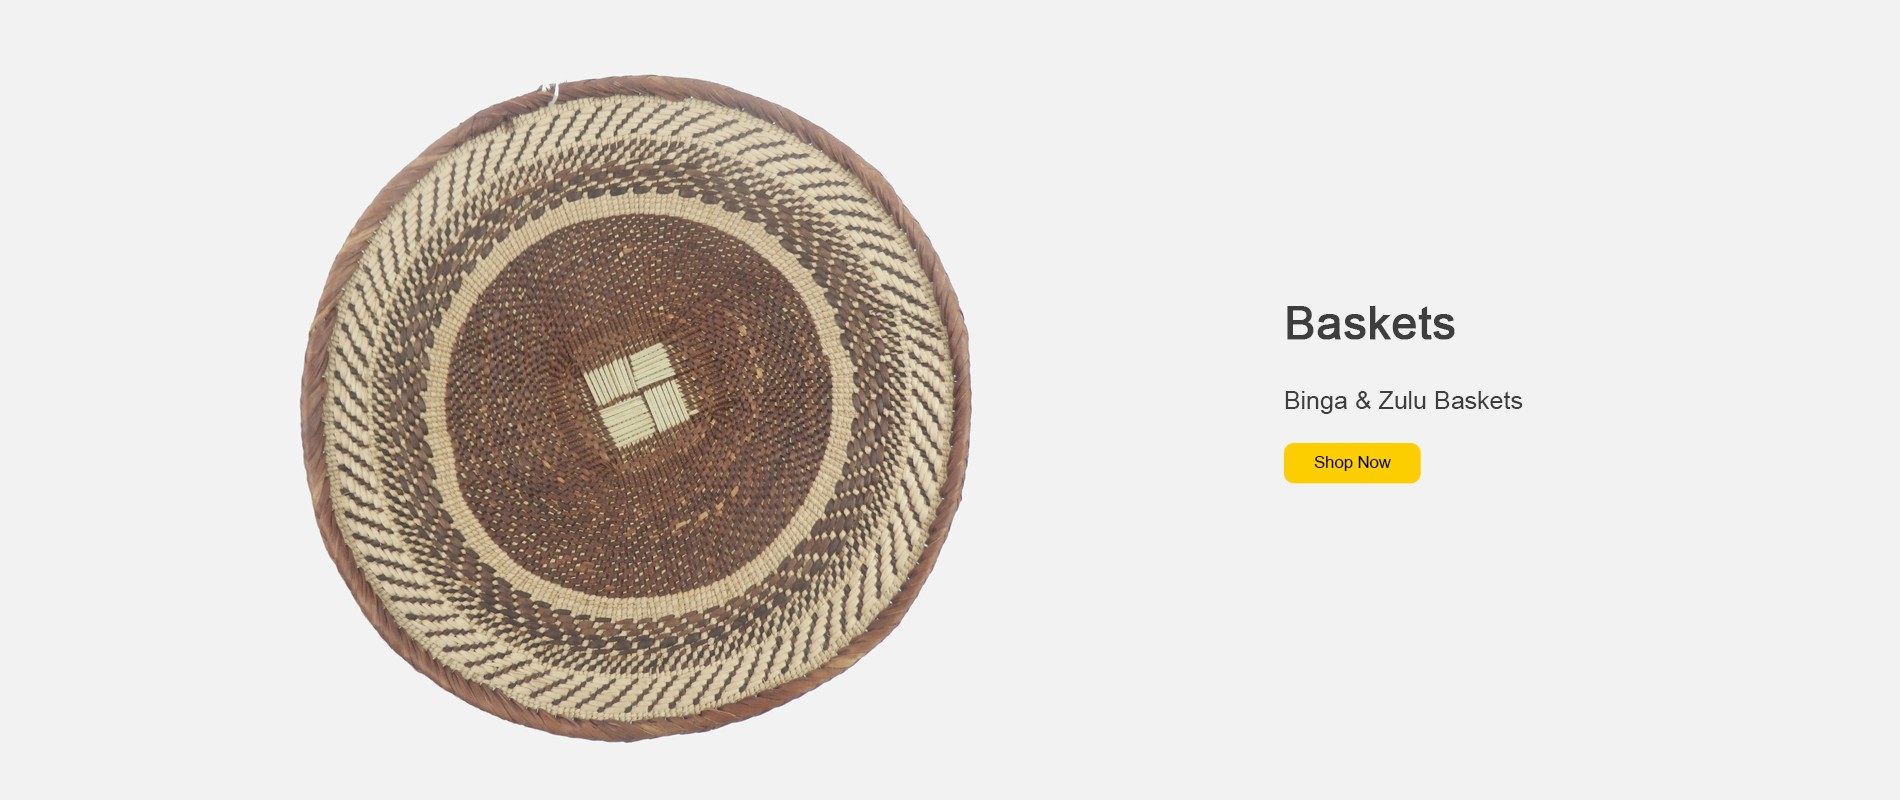 Hand woven range of Binga and Zulu Baskets